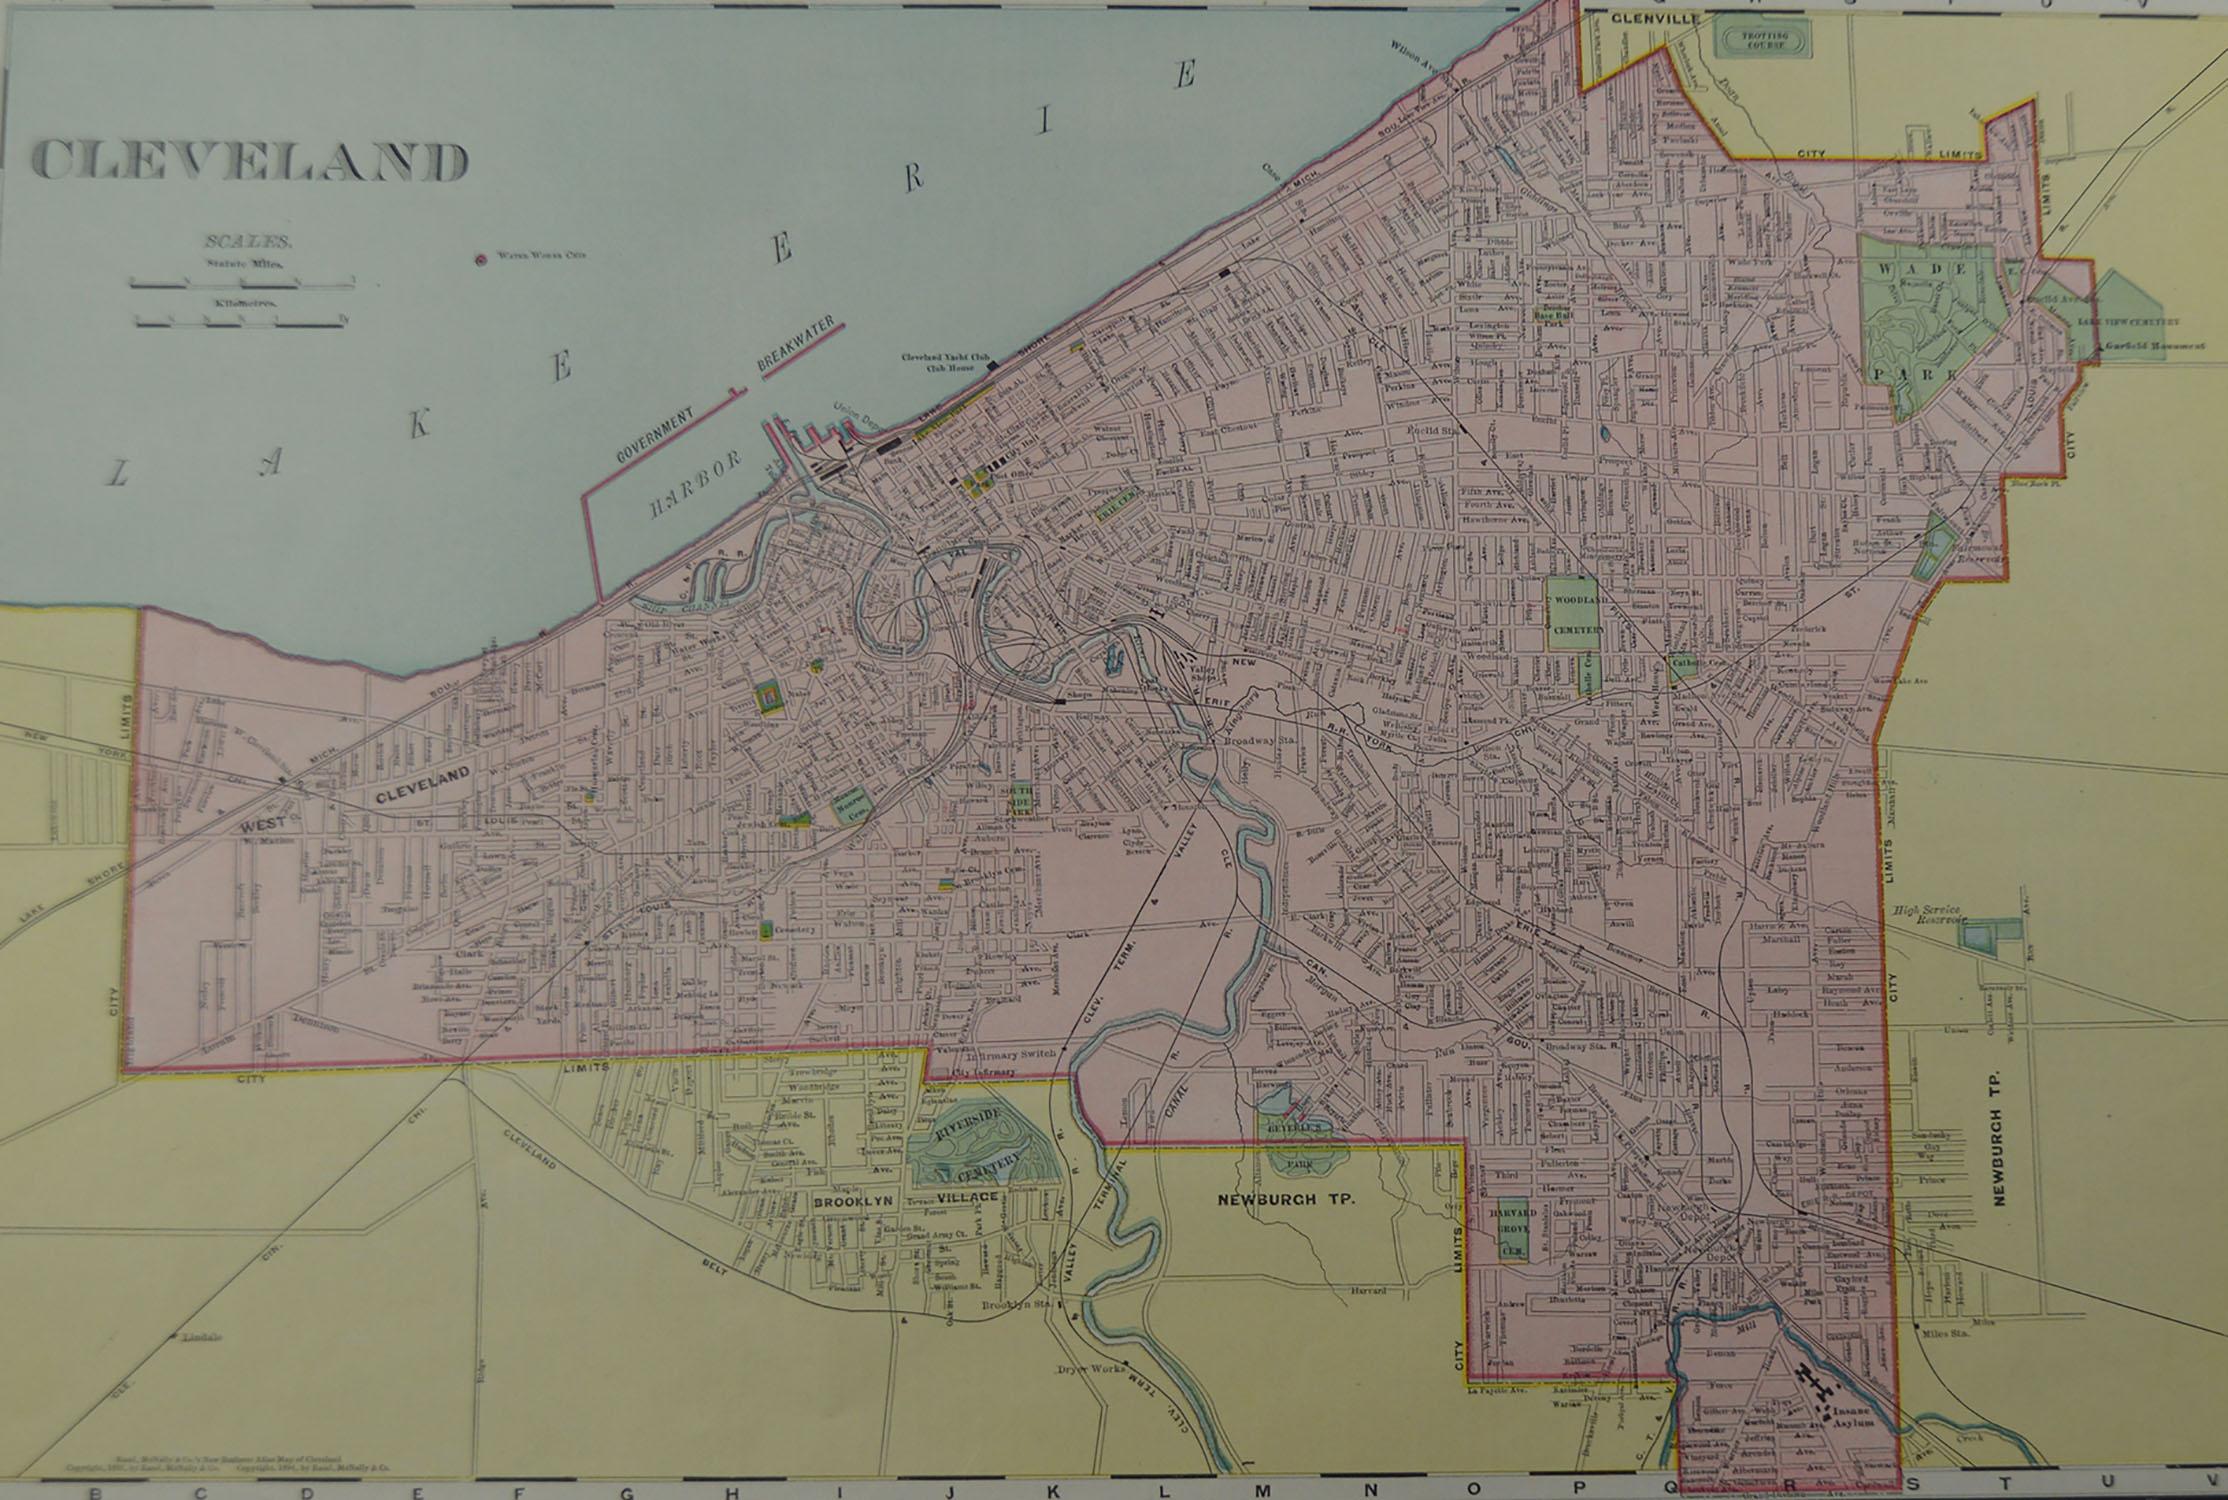 American Original Antique City Plan of Cleveland, Ohio USA, circa 1900